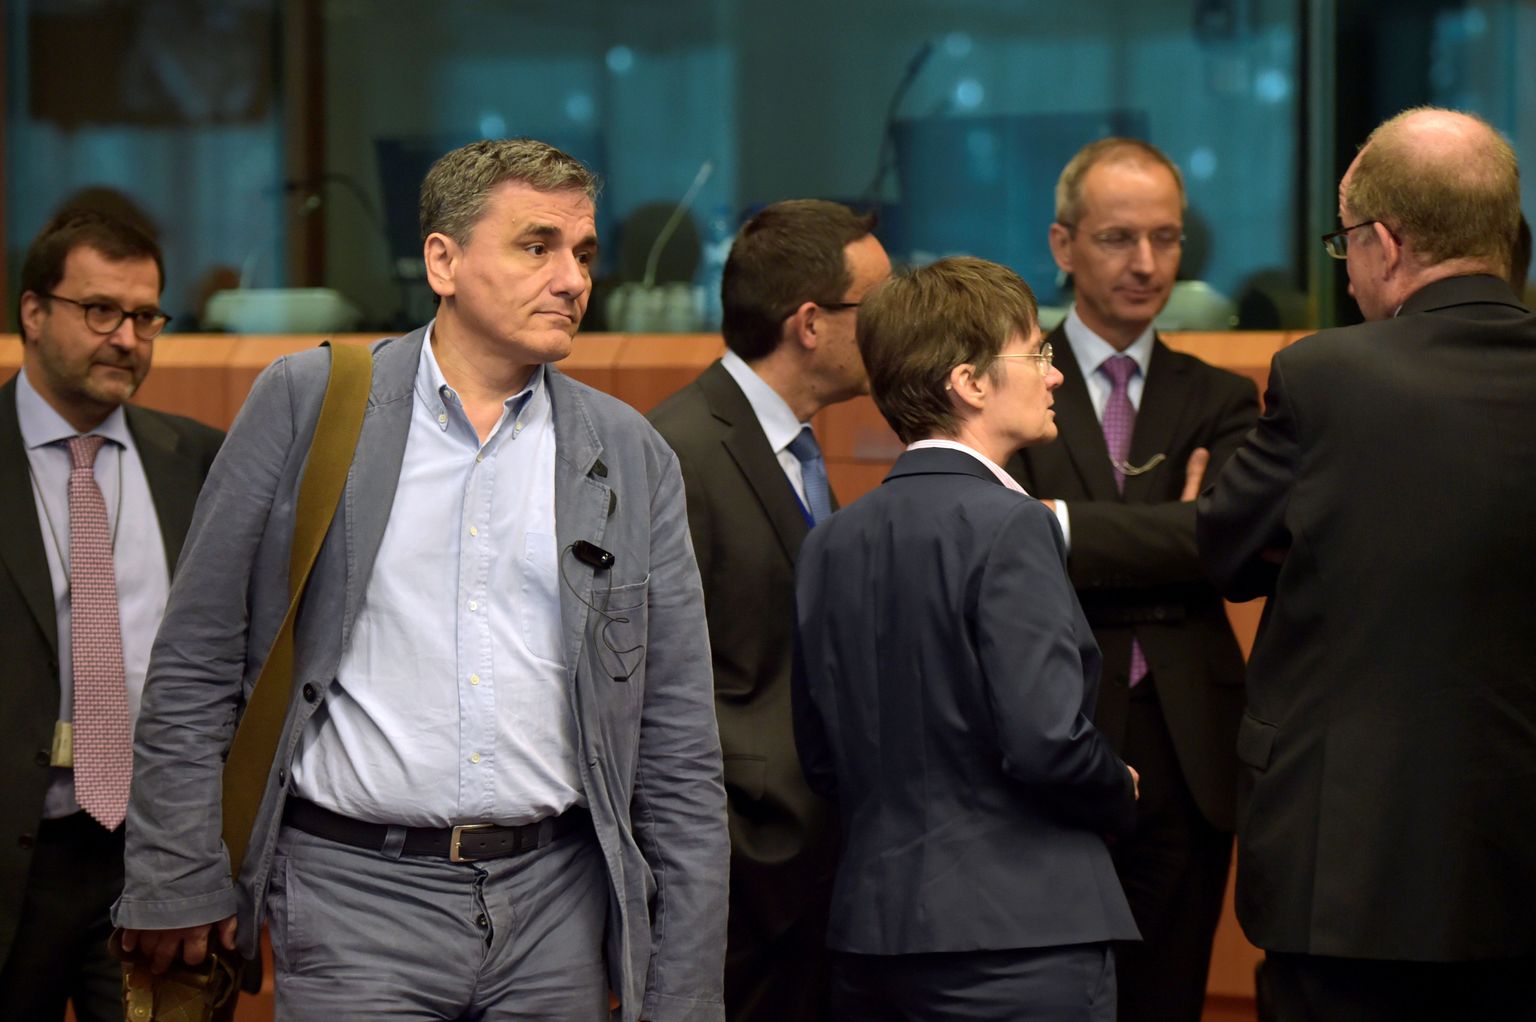 Kreeka rahandusminister Euclid Tsakalotos saabumas rahandusministrite kohtumisele.